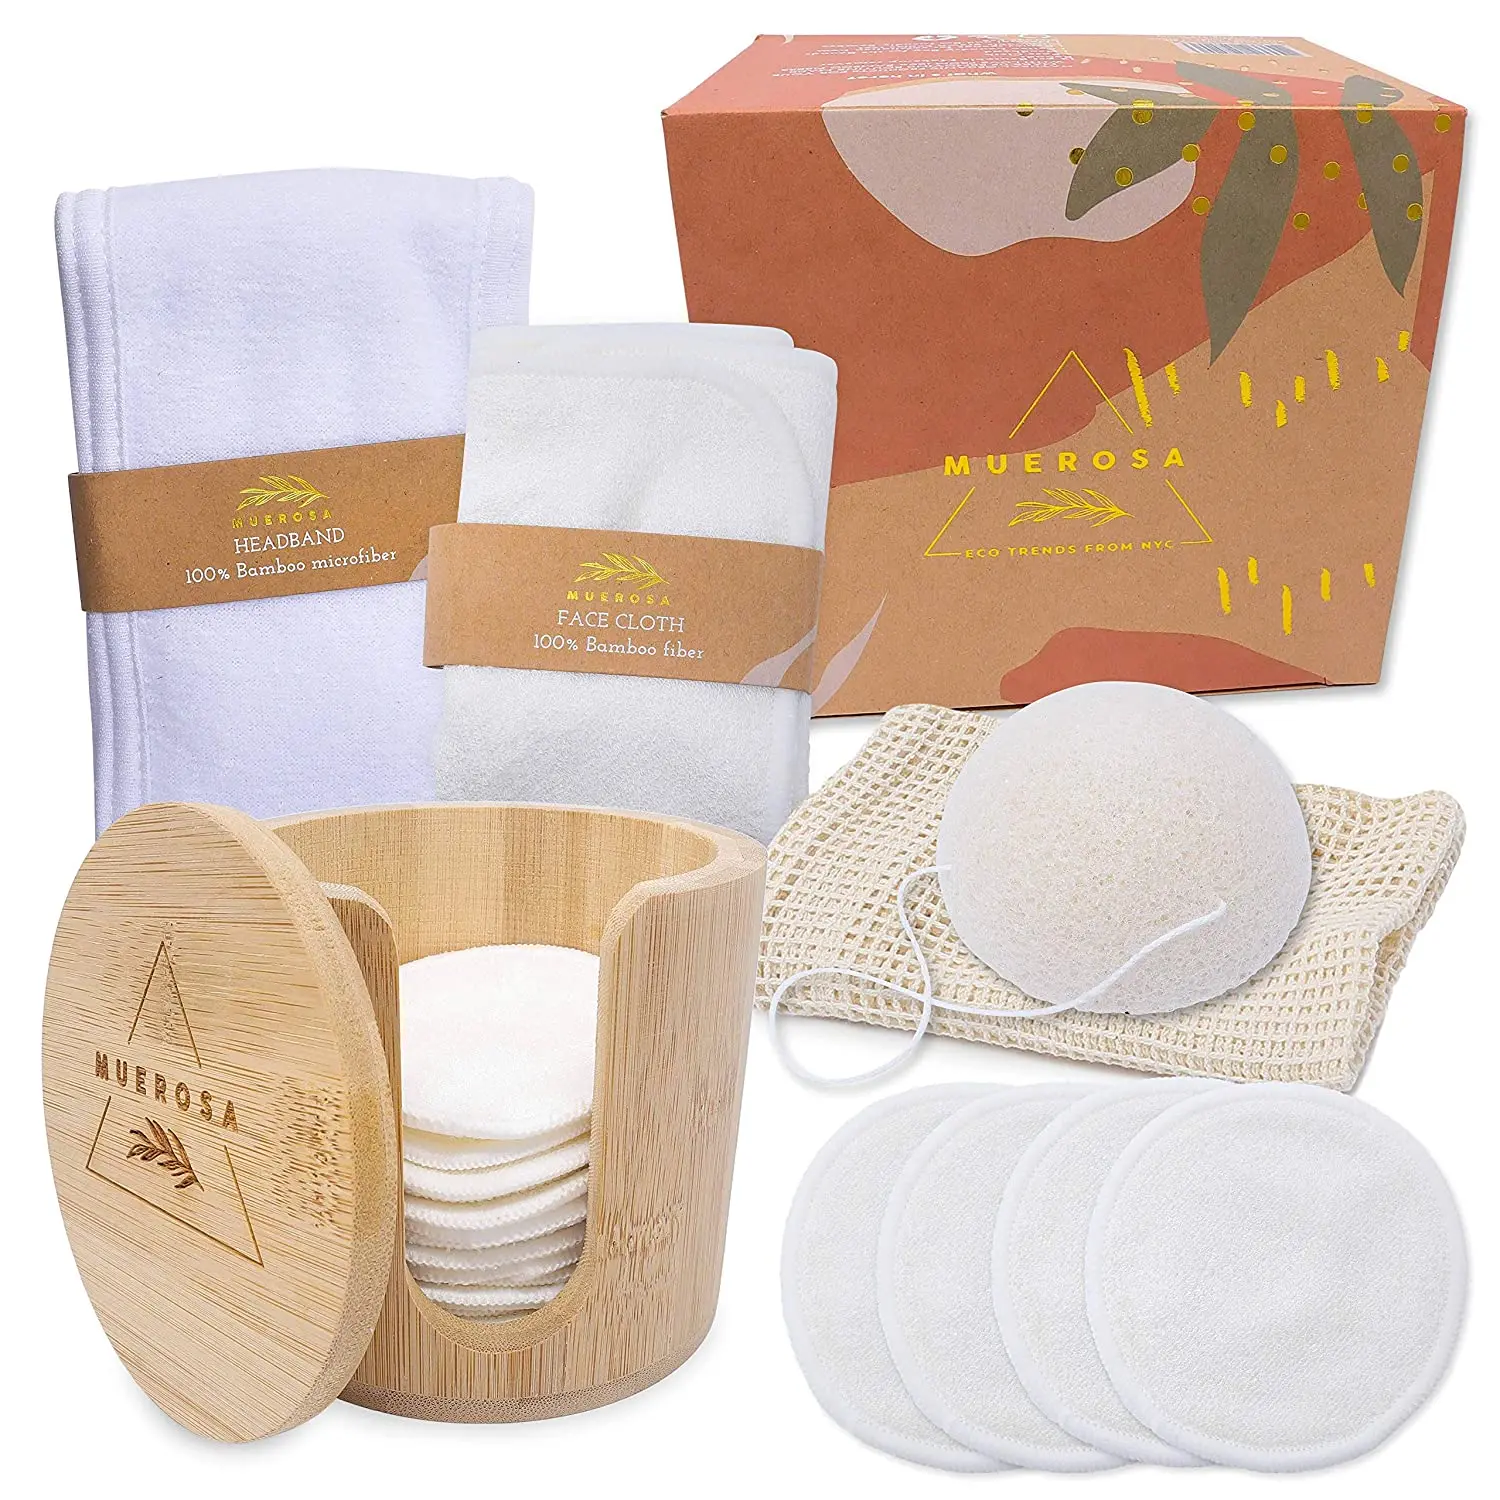 Фабричная цена, моющиеся круглые бамбуковые прокладки для снятия макияжа из органического хлопка